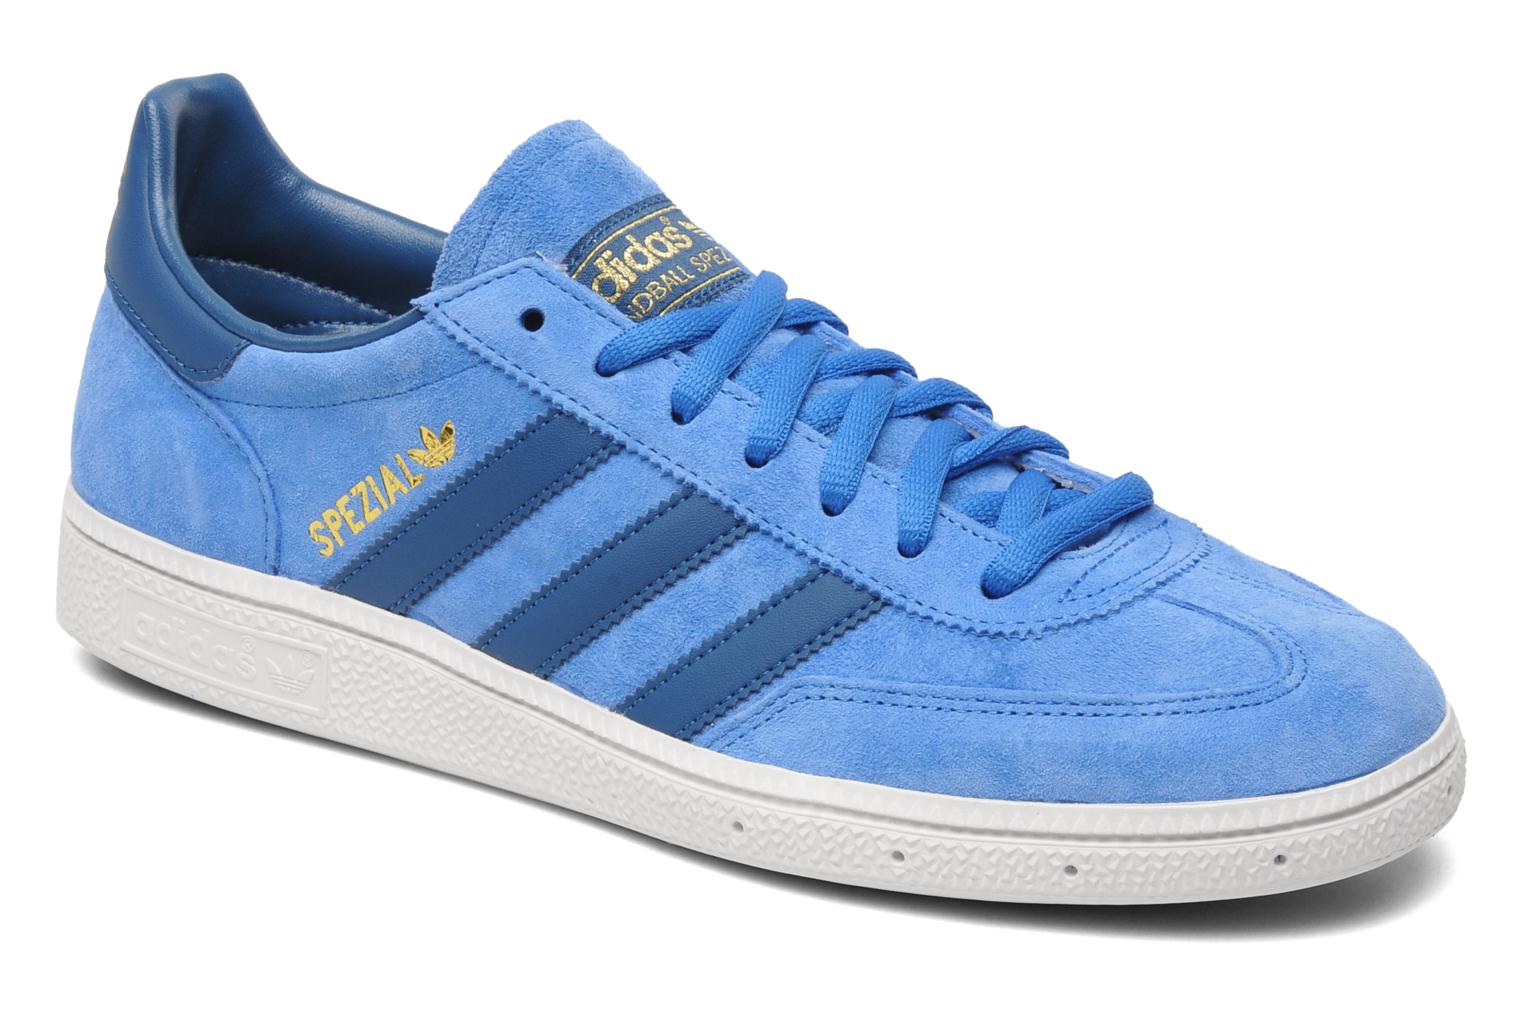 Adidas Originals SPEZIAL (Blue) - Trainers chez Sarenza (193679)